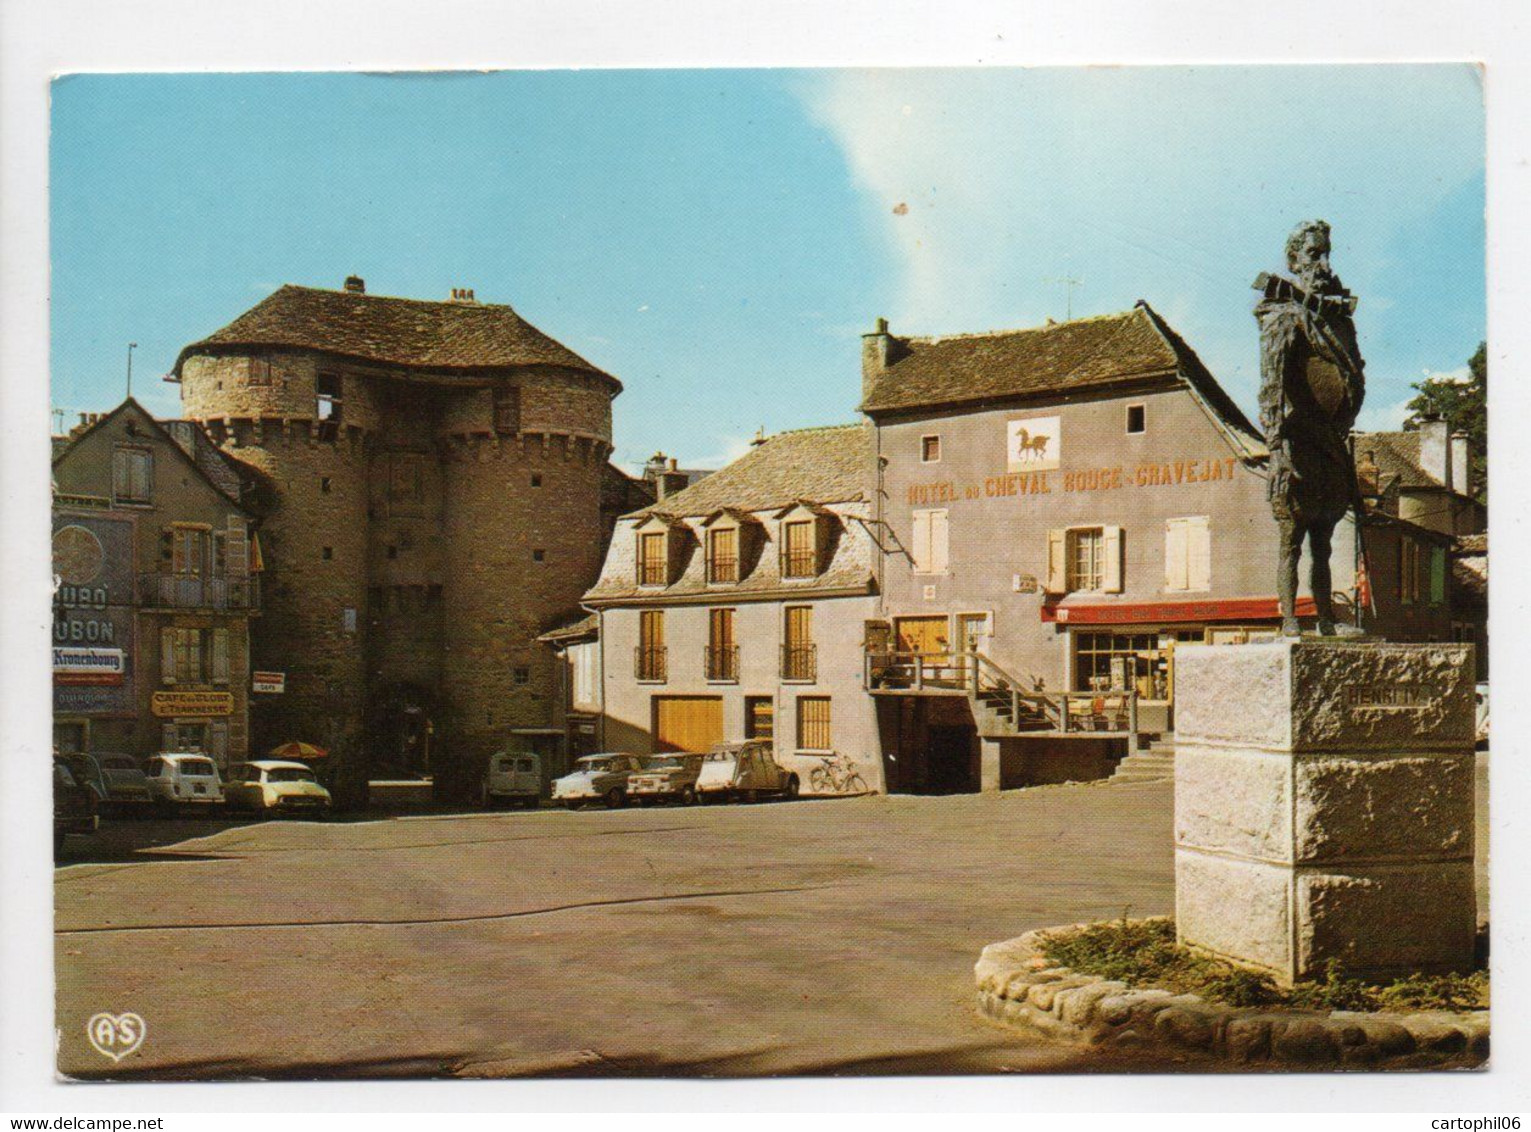 - CPM MARVEJOLS (48) - Place Du Soubeyran 1980 (HOTEL DU CHEVAL ROUGE - CRAVEJAT) - Editions APA-POUX - - Marvejols